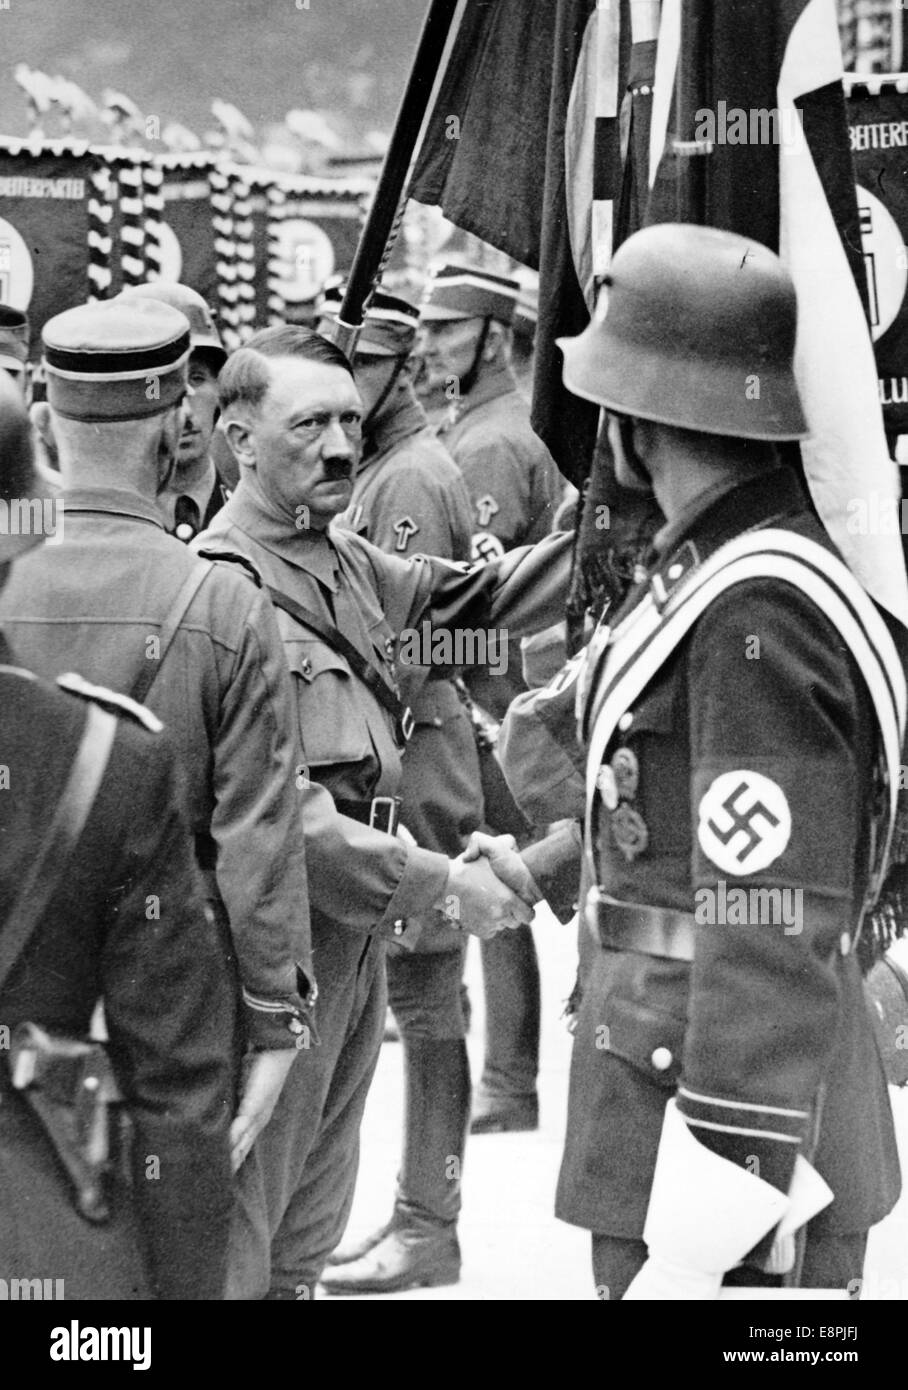 Nürnberger Rallye 1937 in Nürnberg – Adolf Hitler weiht die neuen Standards SA (Sturmabteilung), SS (Schutzstaffel) und NSKK (Nationales sozialistisches Kfz-Korps) mit der "Blutflagge" ein. Die neuen Standards werden von der "Blutflagge" (hinter Hitler) berührt, die angeblich während der Bierhalle Putsch getragen und damit geweiht wurde. Fotoarchiv für Zeitgeschichtee - KEINE ÜBERWEISUNG - Stockfoto